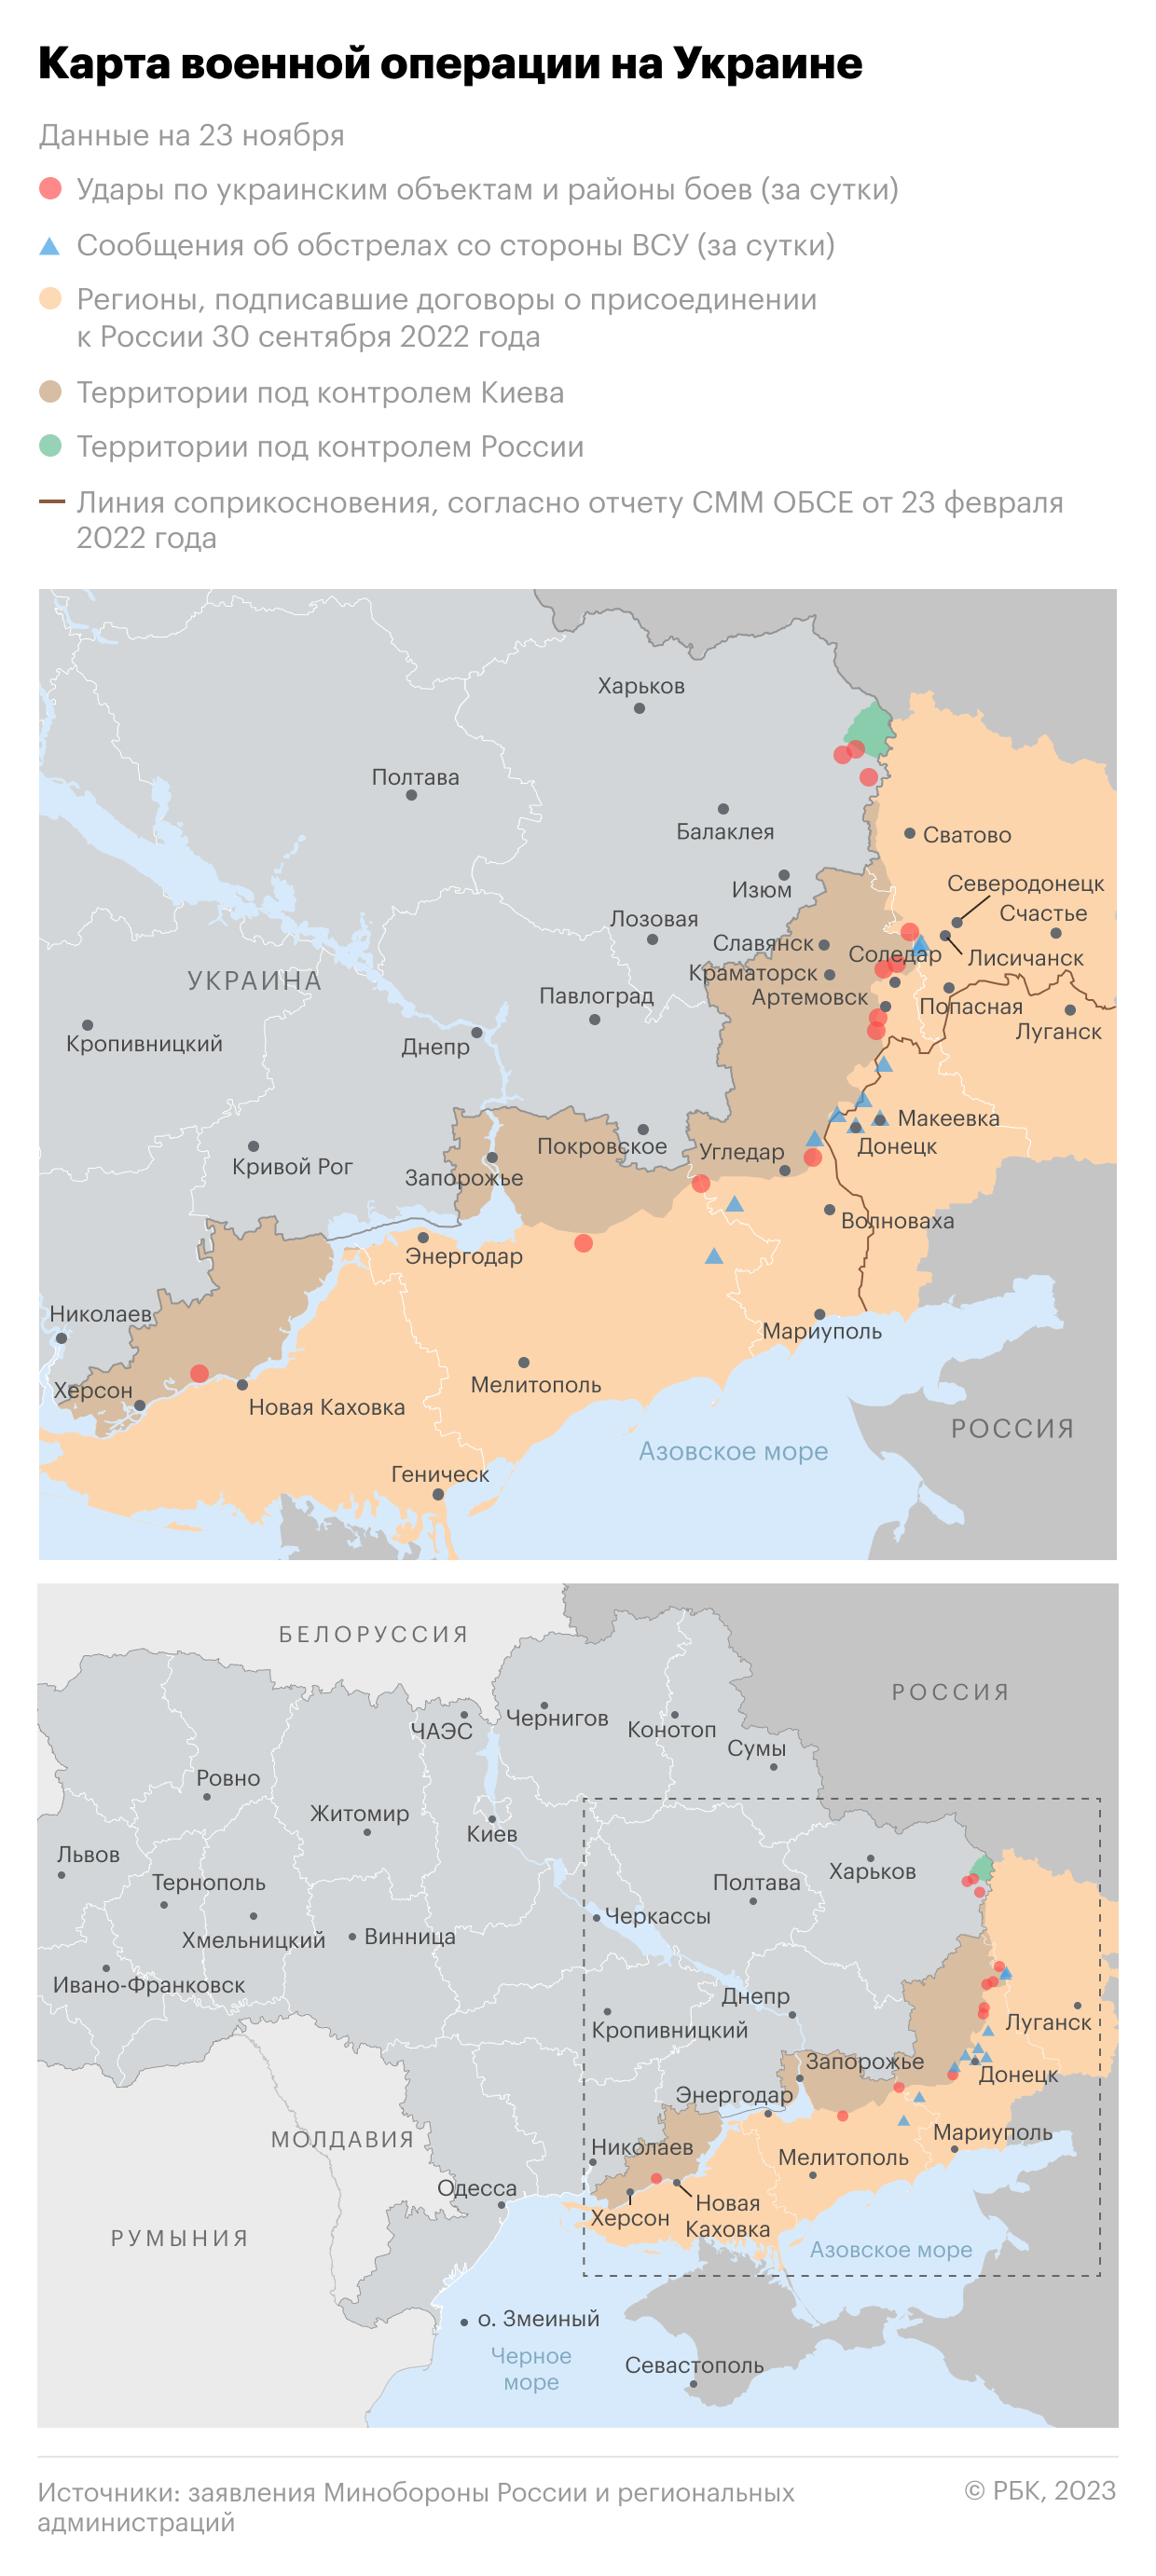 Политическая карта украины на сегодняшний день